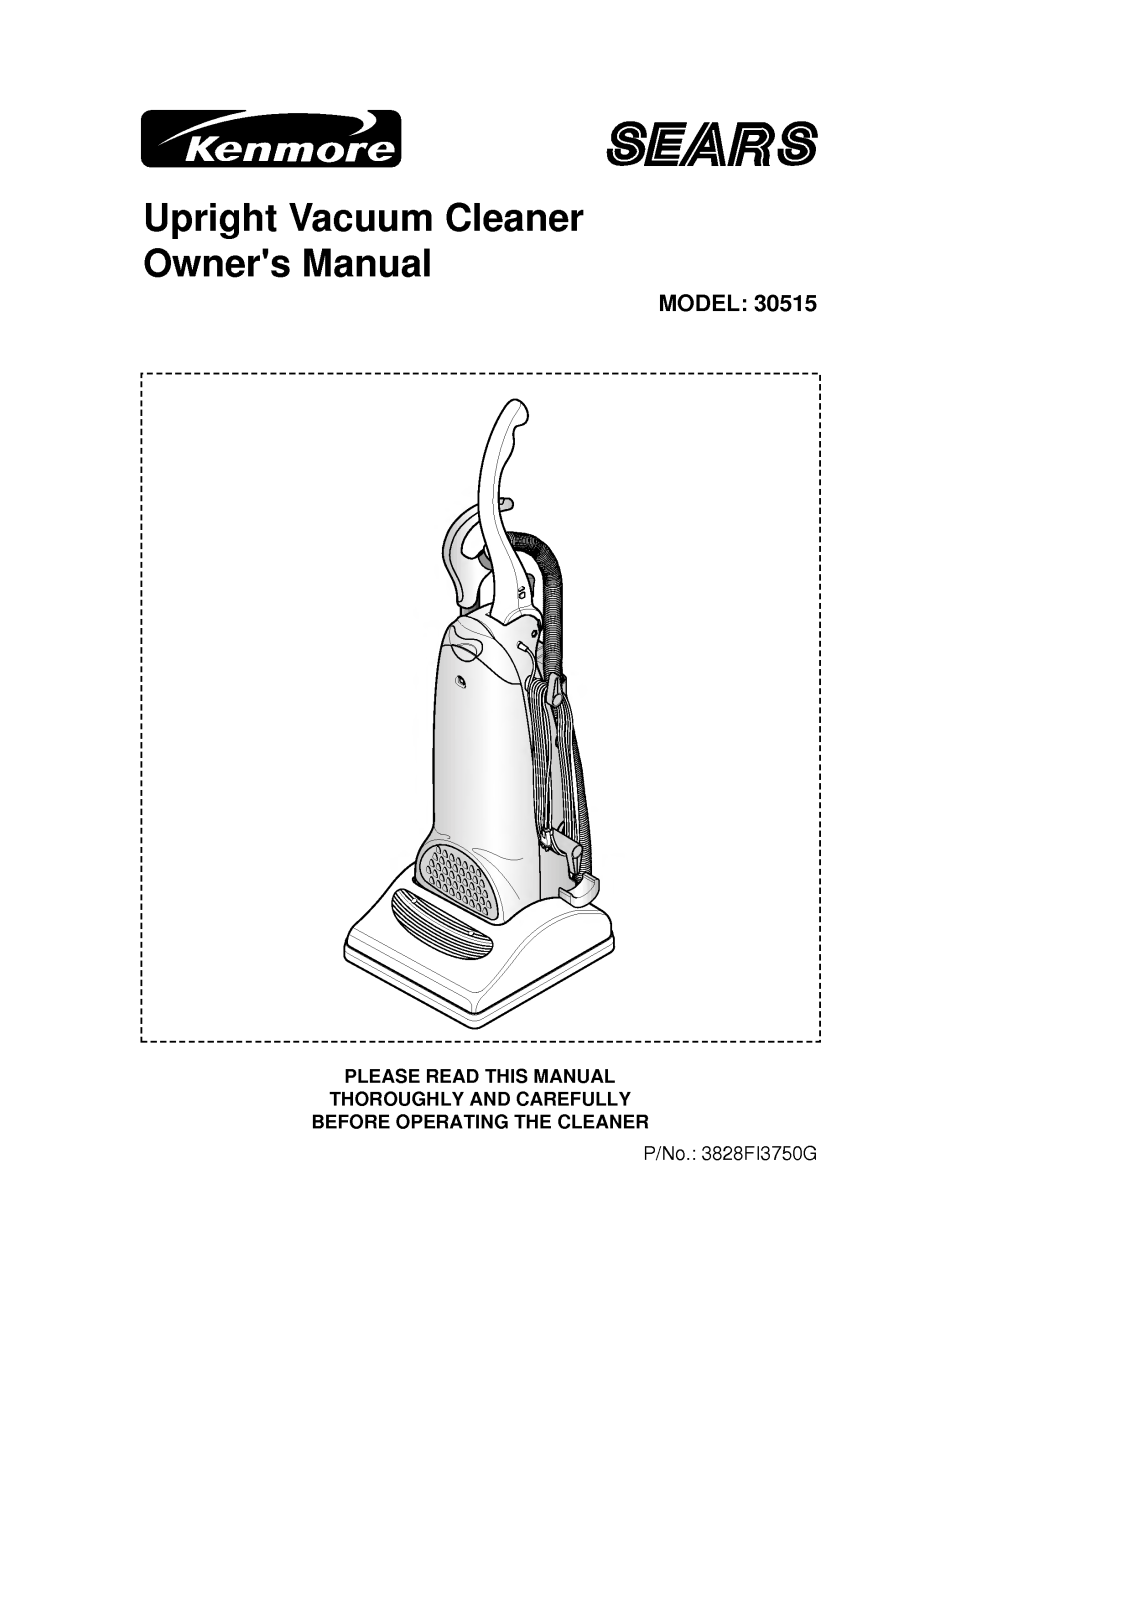 LG 20 30515 User Manual